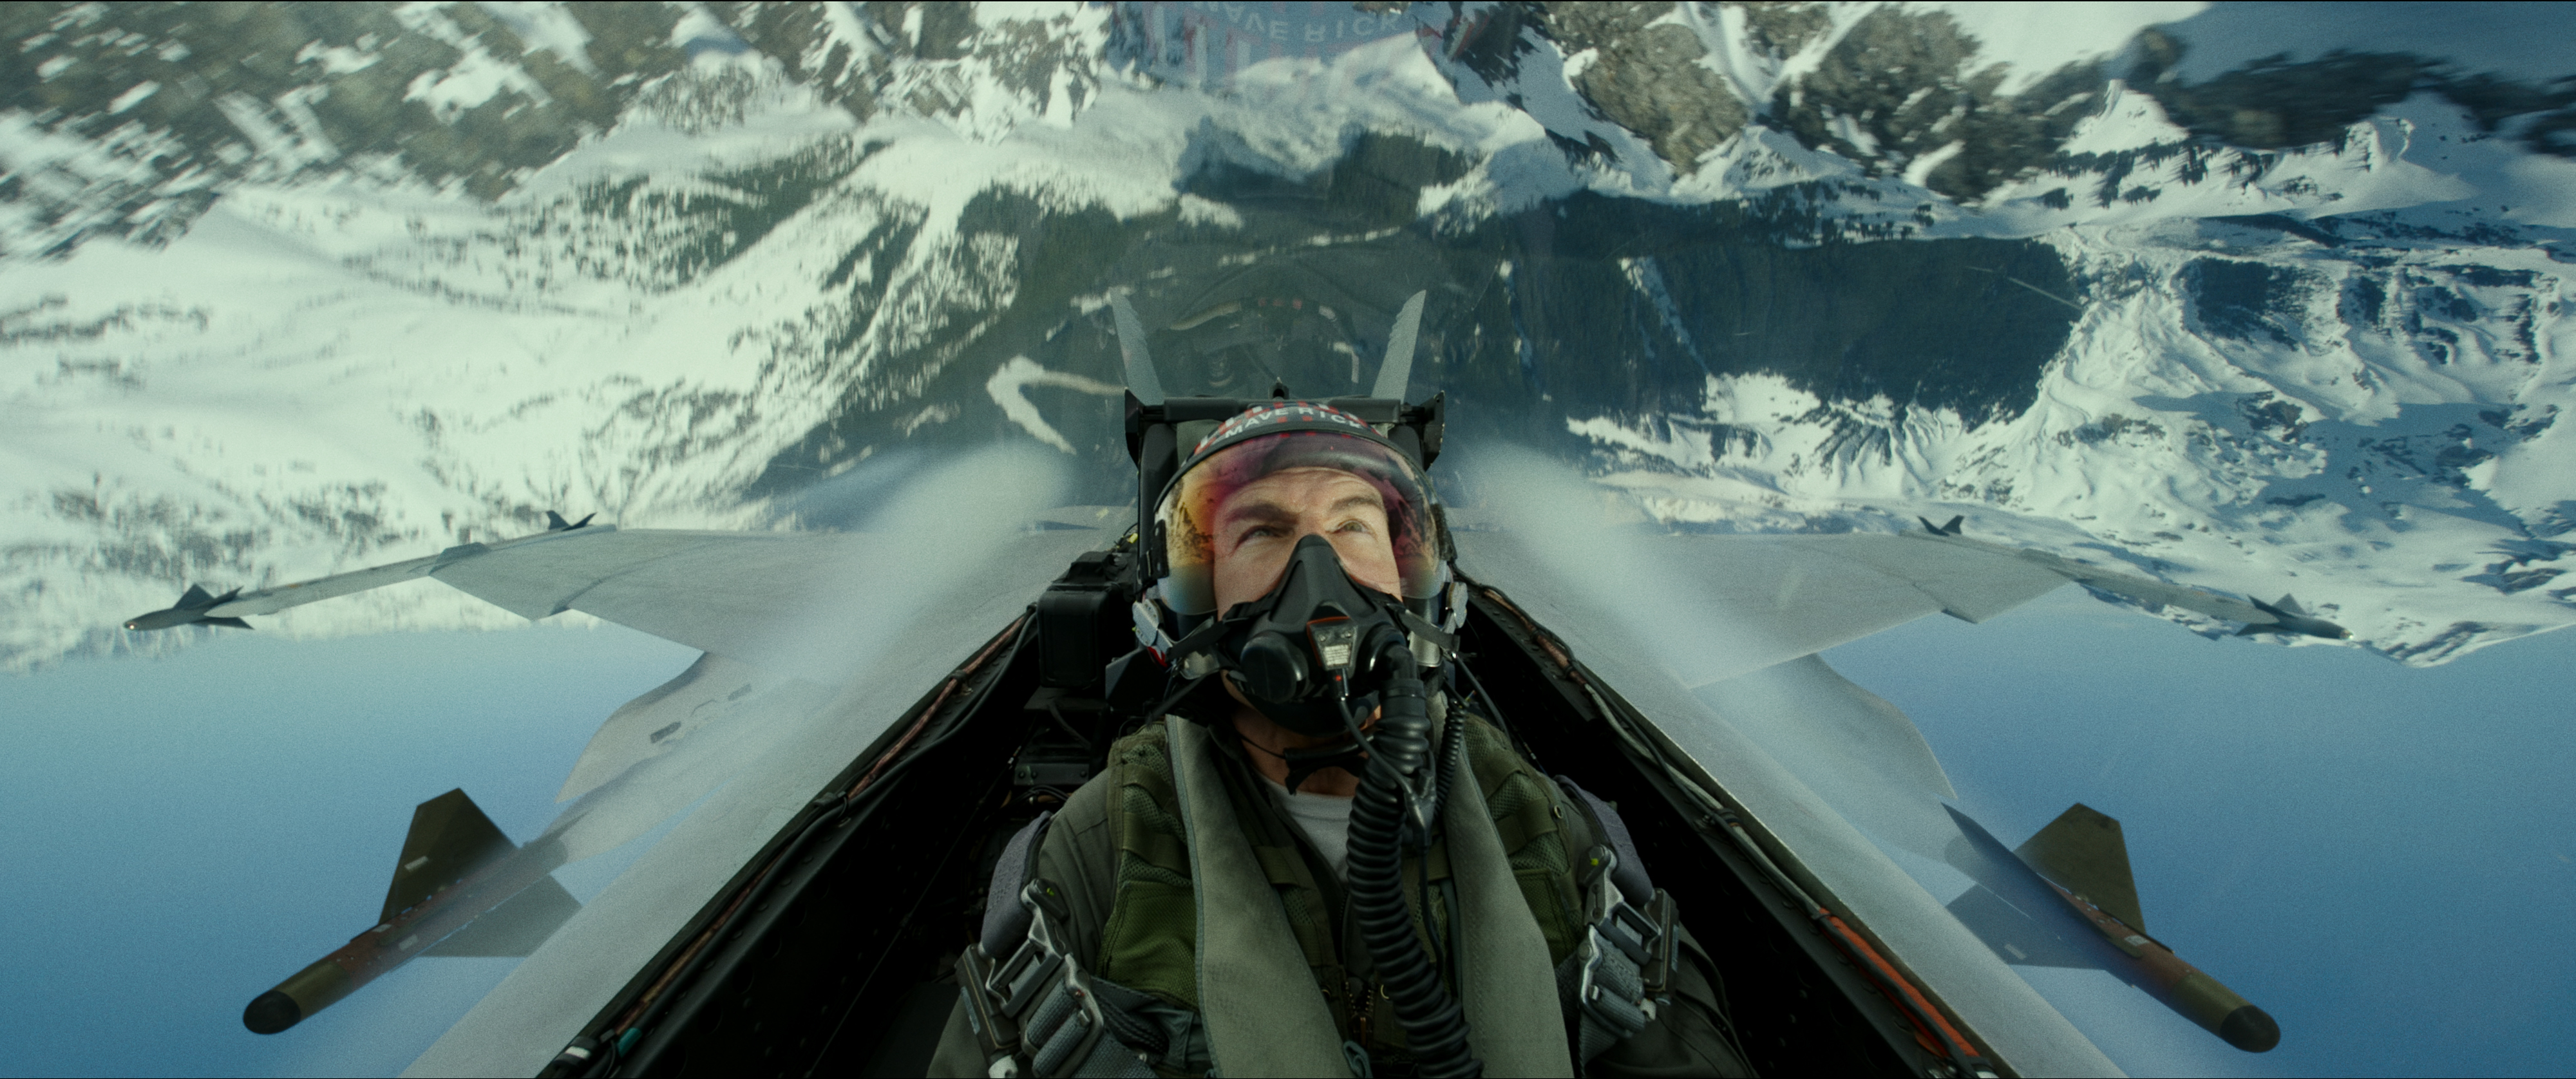 En esta imagen proporcionada por Paramount Pictures Tom Cruise en el papel del Capt. Pete "Maverick" Mitchell en "Top Gun: Maverick". (Paramount Pictures vía AP)